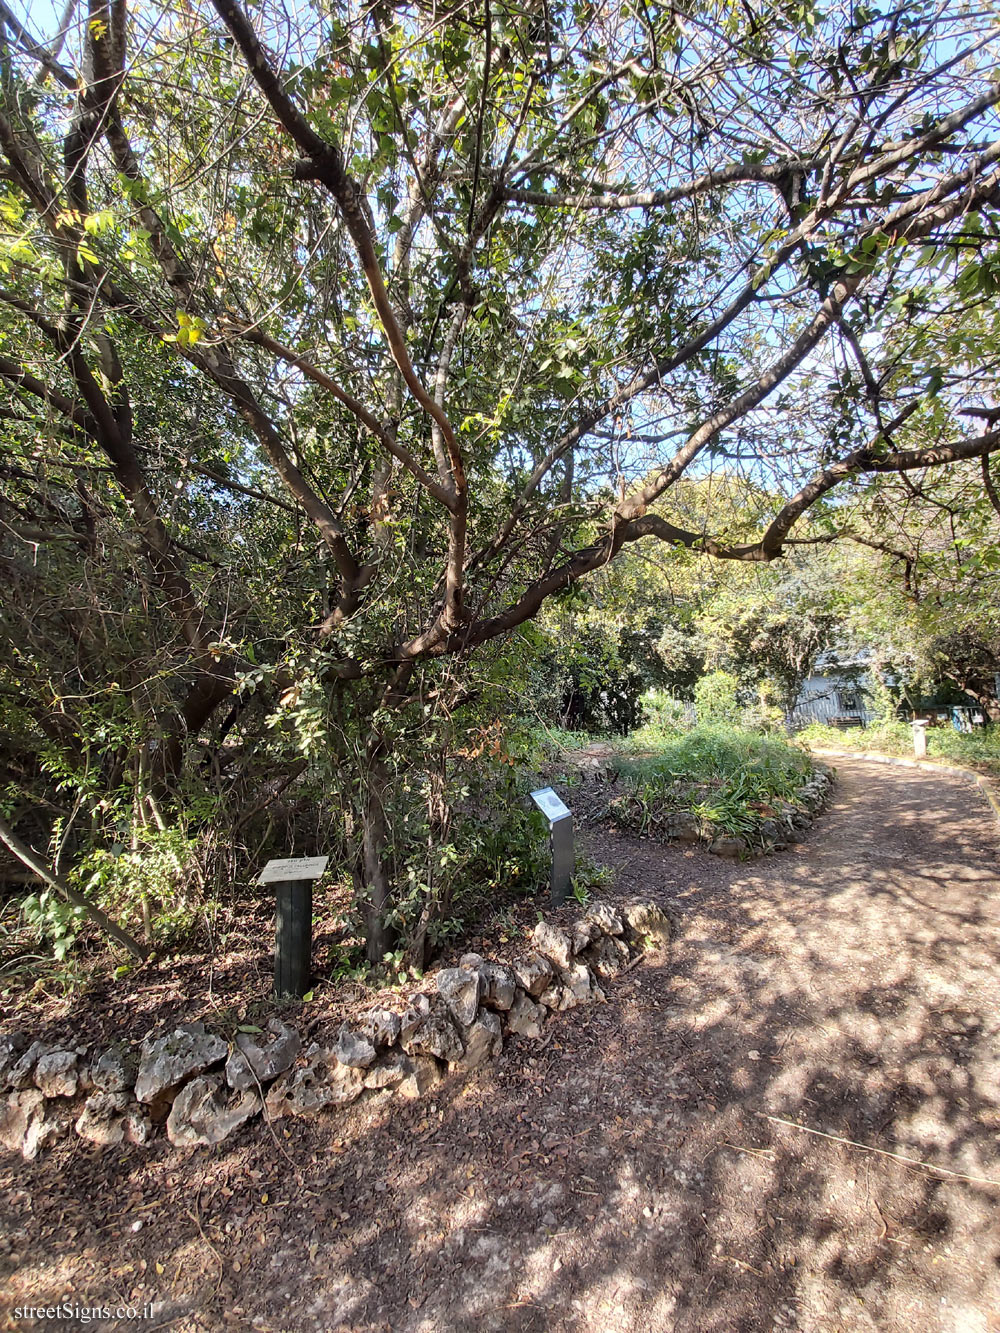 Tel Aviv - Ecological Botanical Garden - Terebinth - Herzl St 157, Tel Aviv-Yafo, Israel